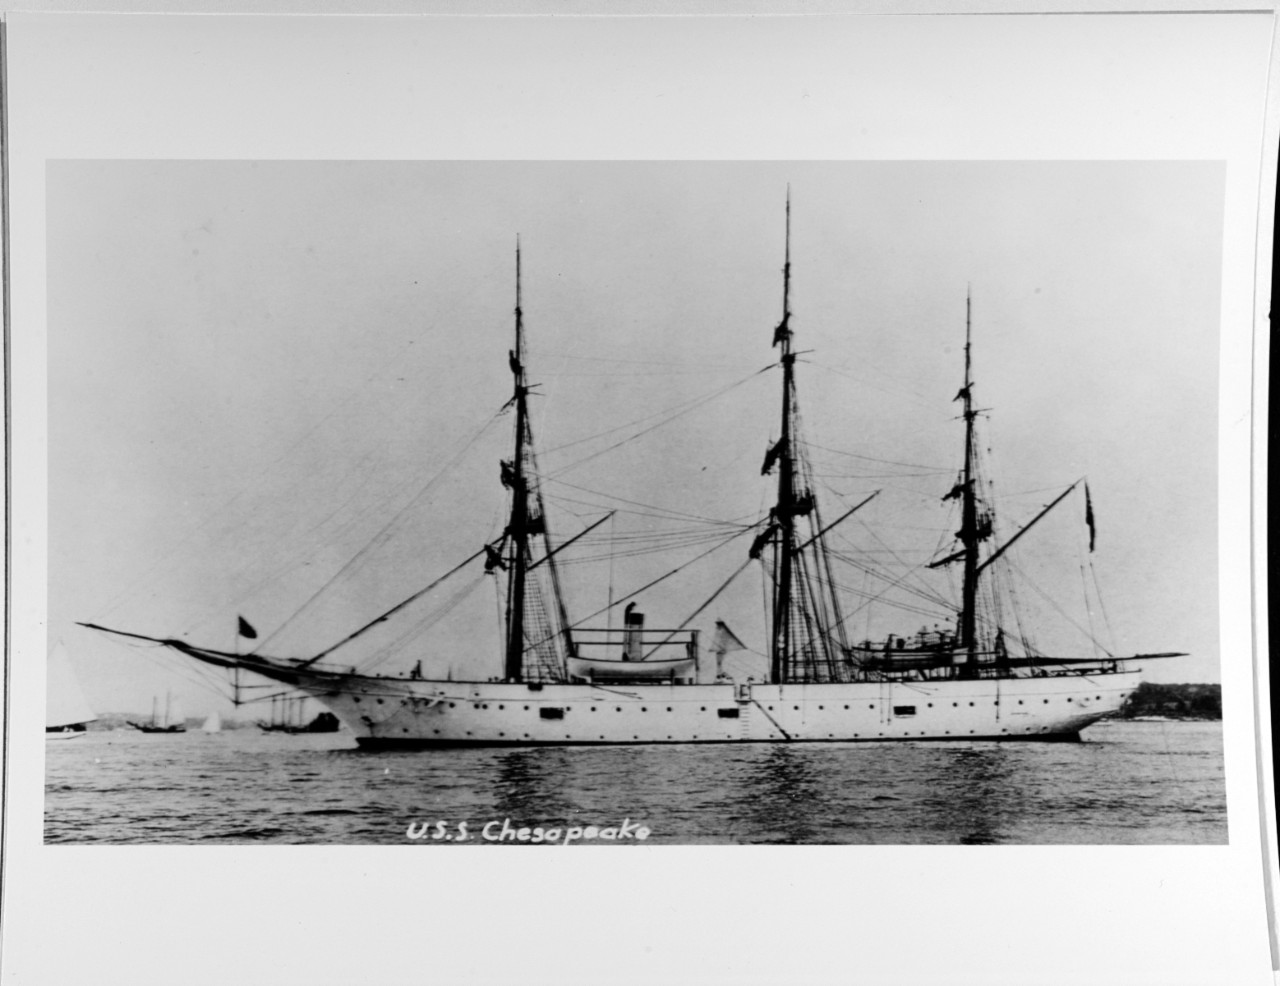 USS CHESAPEAKE 